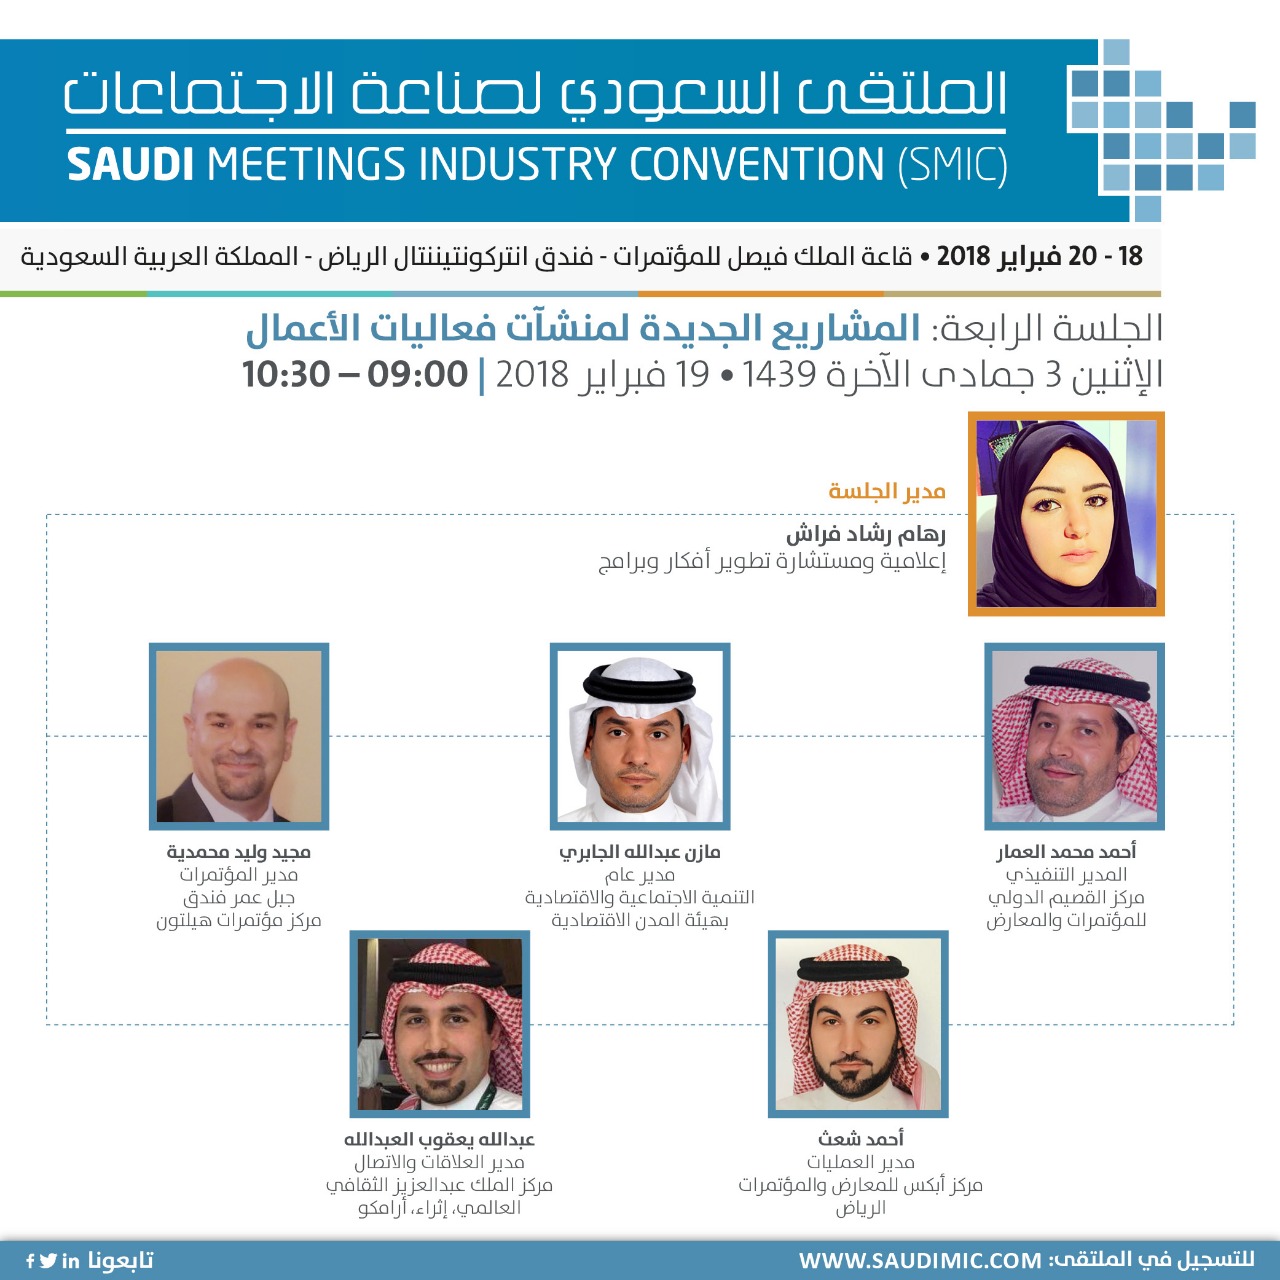 الملتقى السعودي لصناعة الاجتماعات يدرس إنشاء مرافق جديدة للمعارض والمؤتمرات